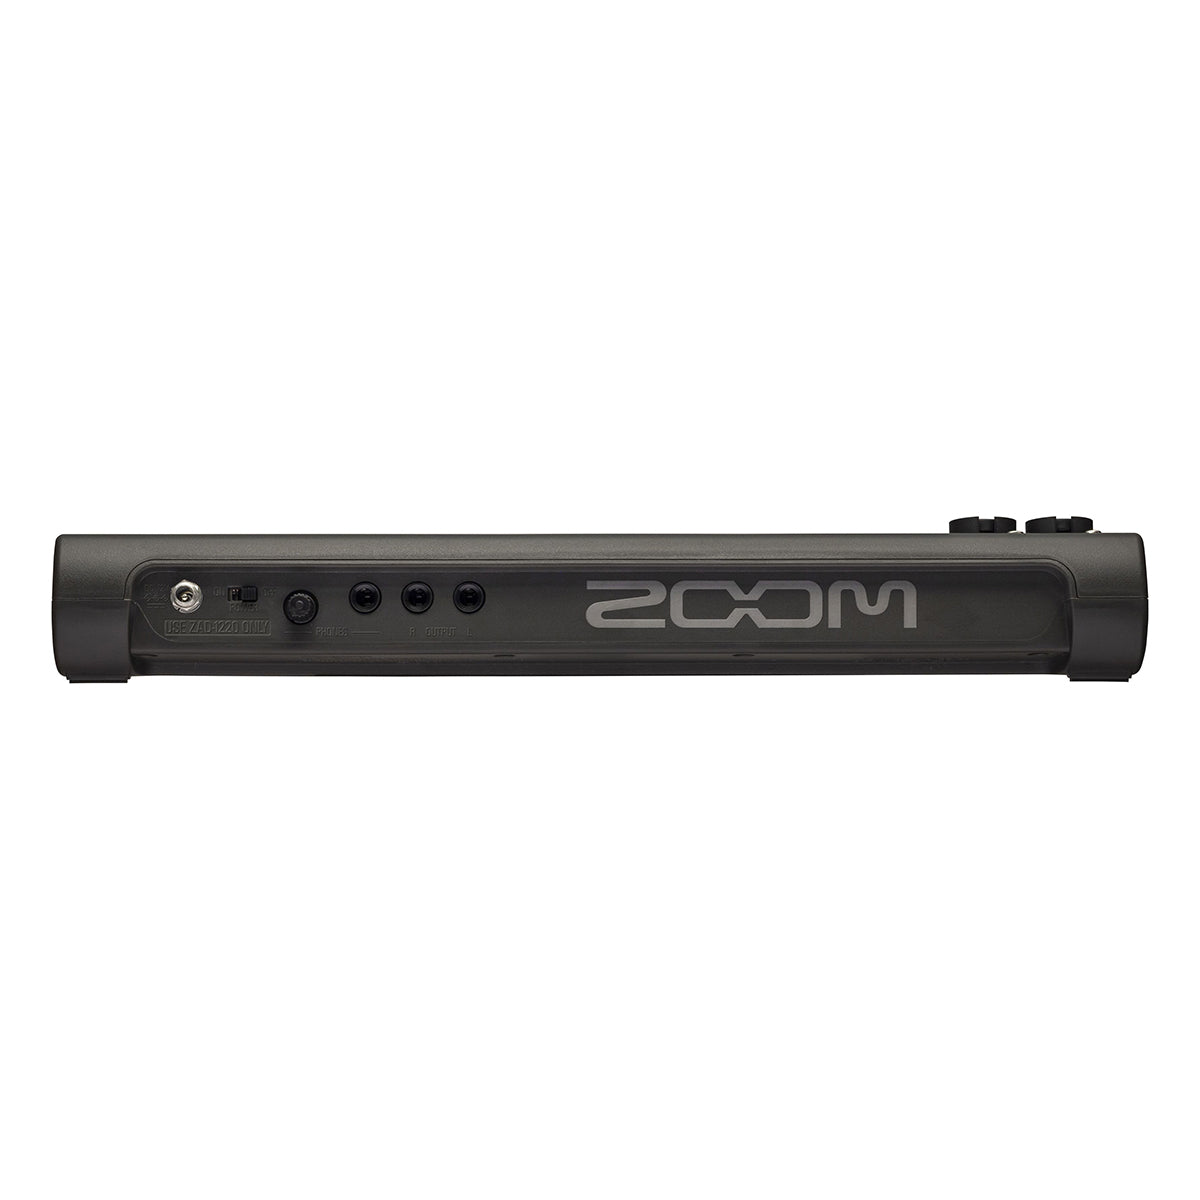 Zoom R20 Multi-Track Recorder